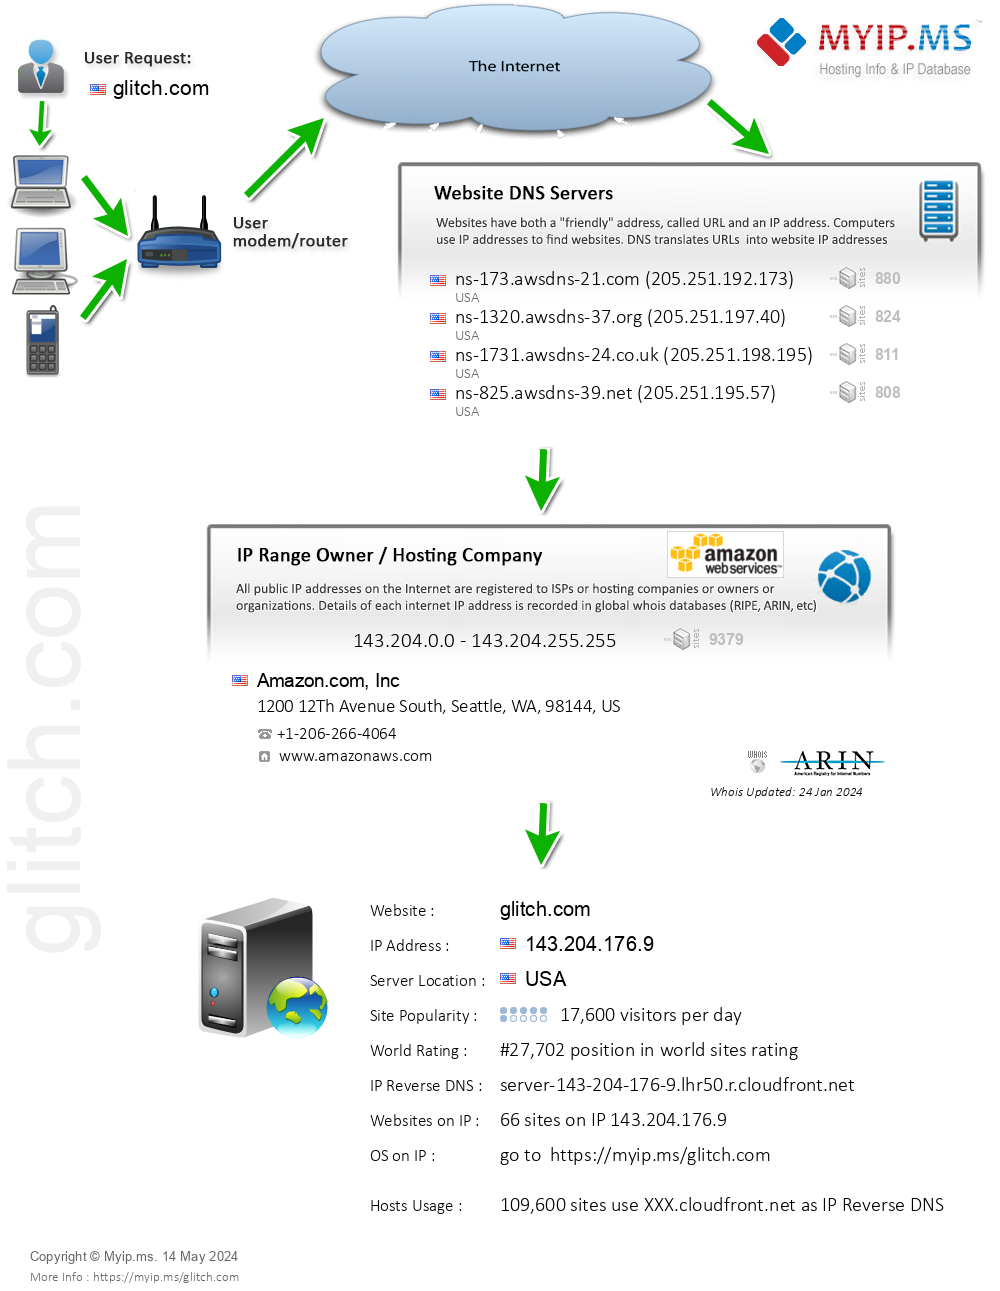 Glitch.com - Website Hosting Visual IP Diagram